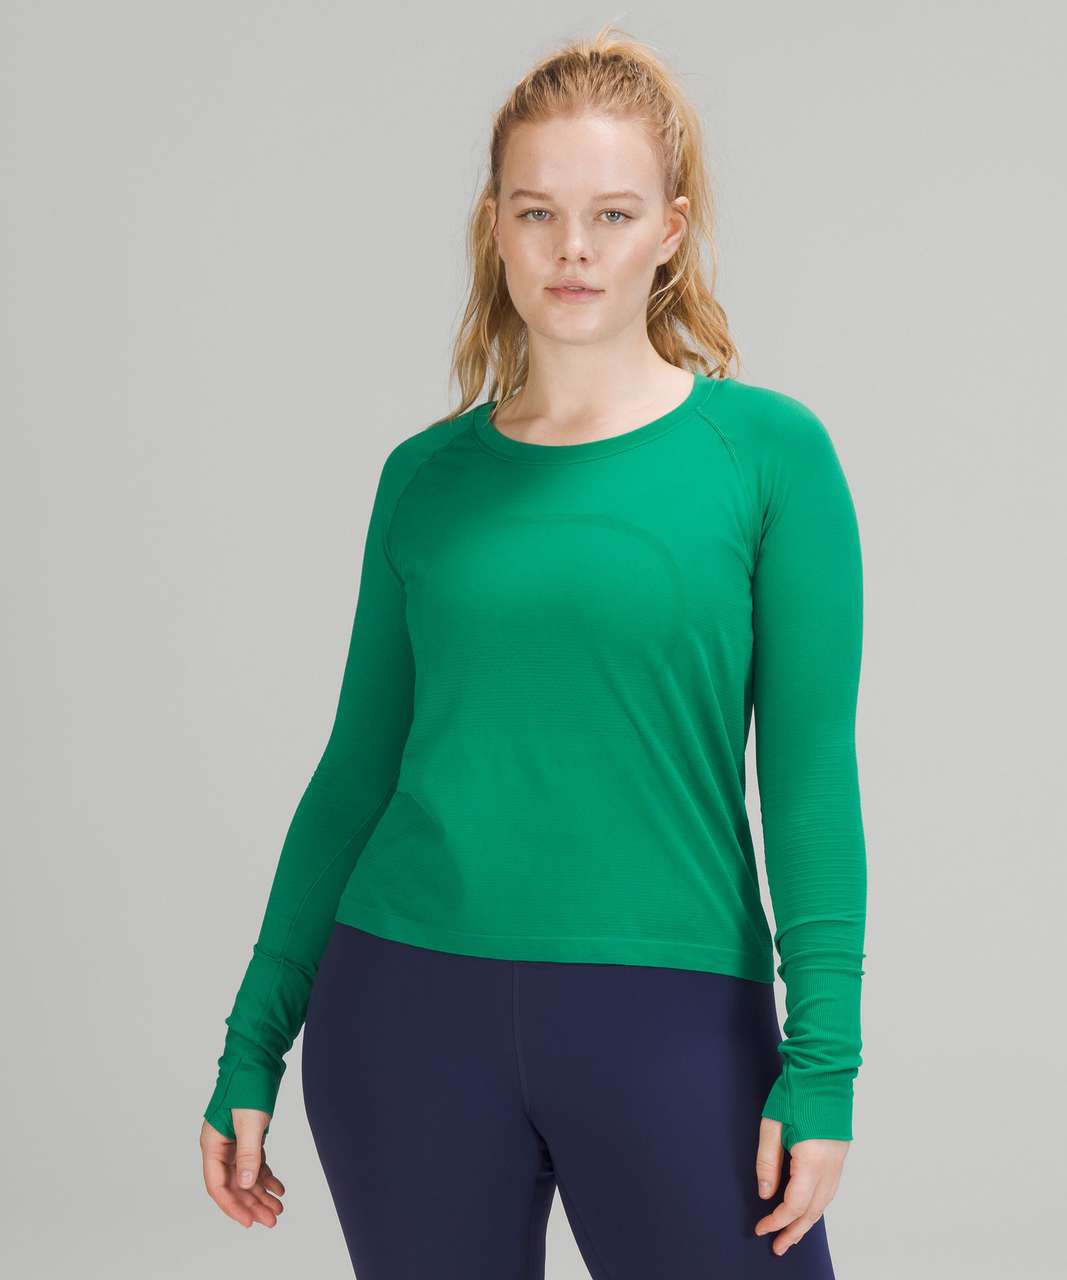 Lululemon Swiftly Tech Long Sleeve Shirt 2.0 *Race Length - Emerald Ice / Emerald Ice